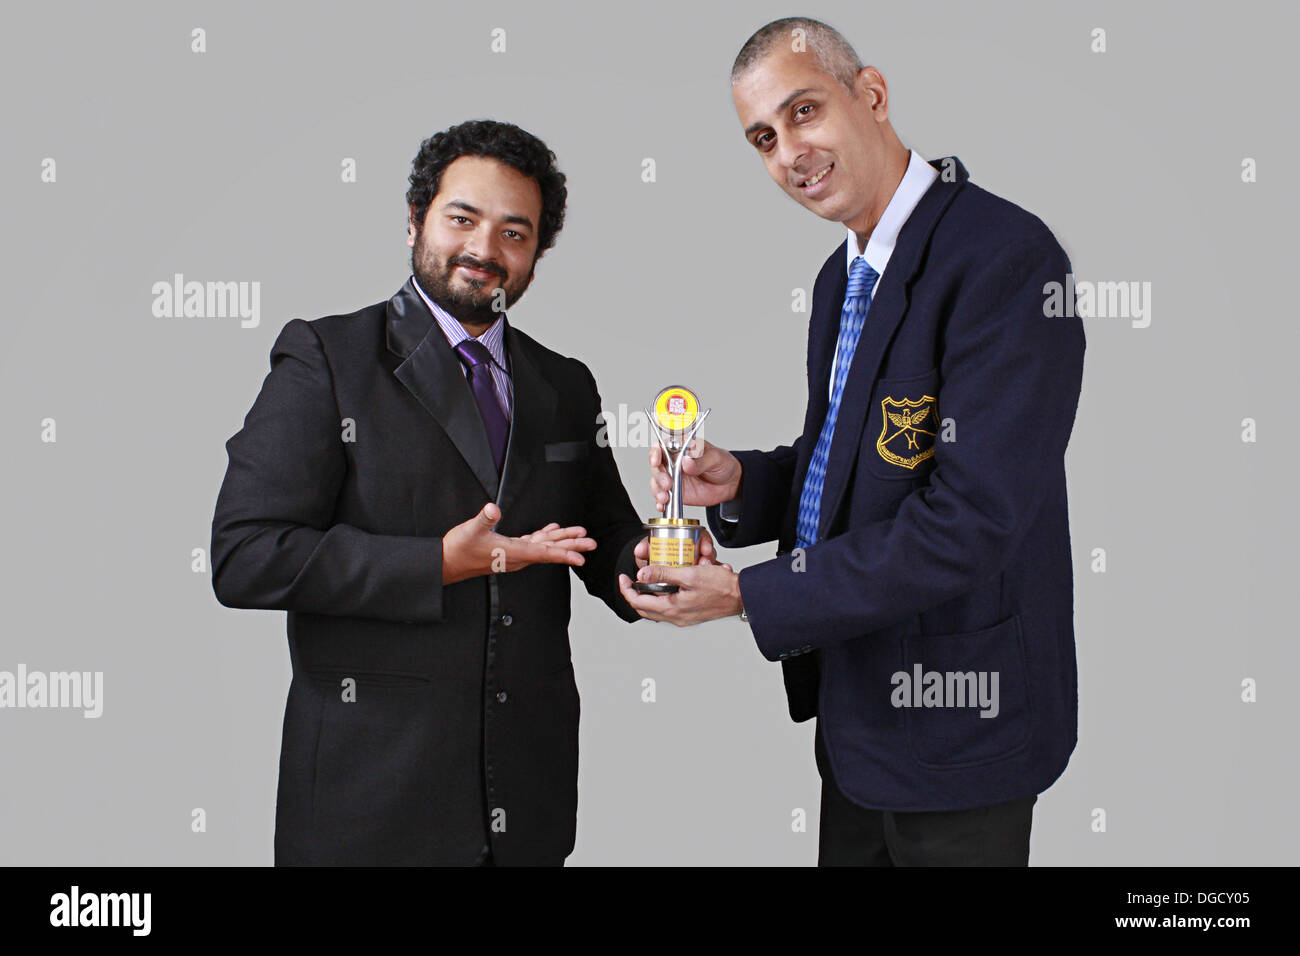 Zwei Lächelnde Geschäftsleute mit einer Auszeichnung. Preisverleihung Stockfoto